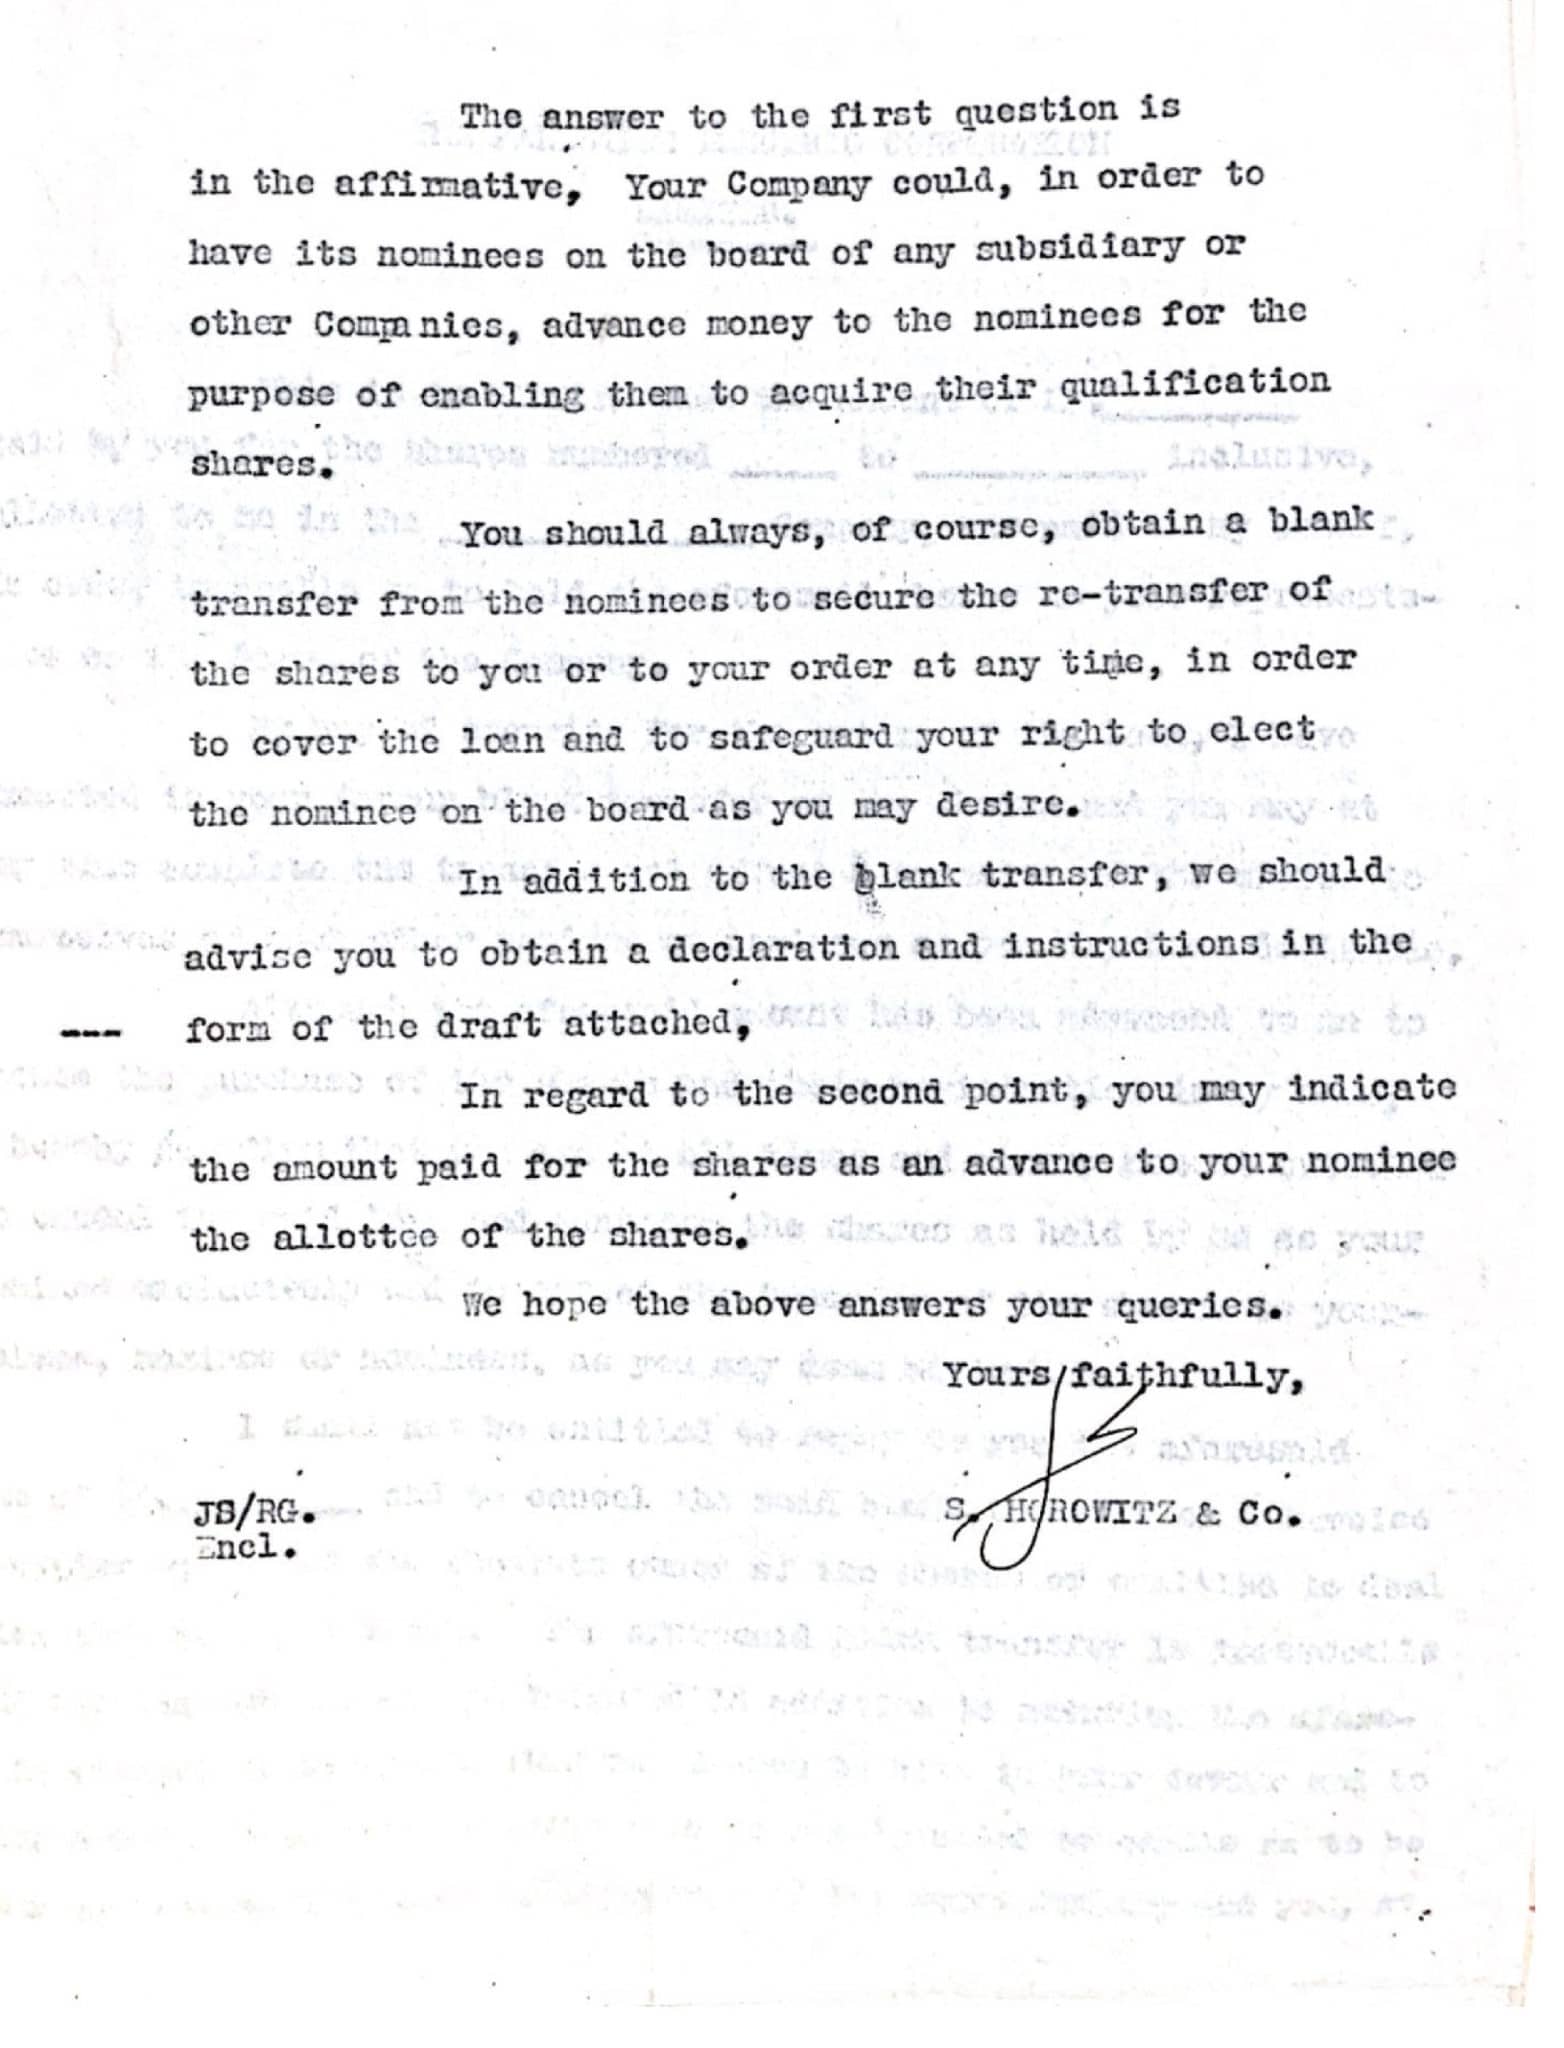 מכתב המשרד אל חברת החשמל מיום 24.6.1936 בענין הנפקת מניות 1/3